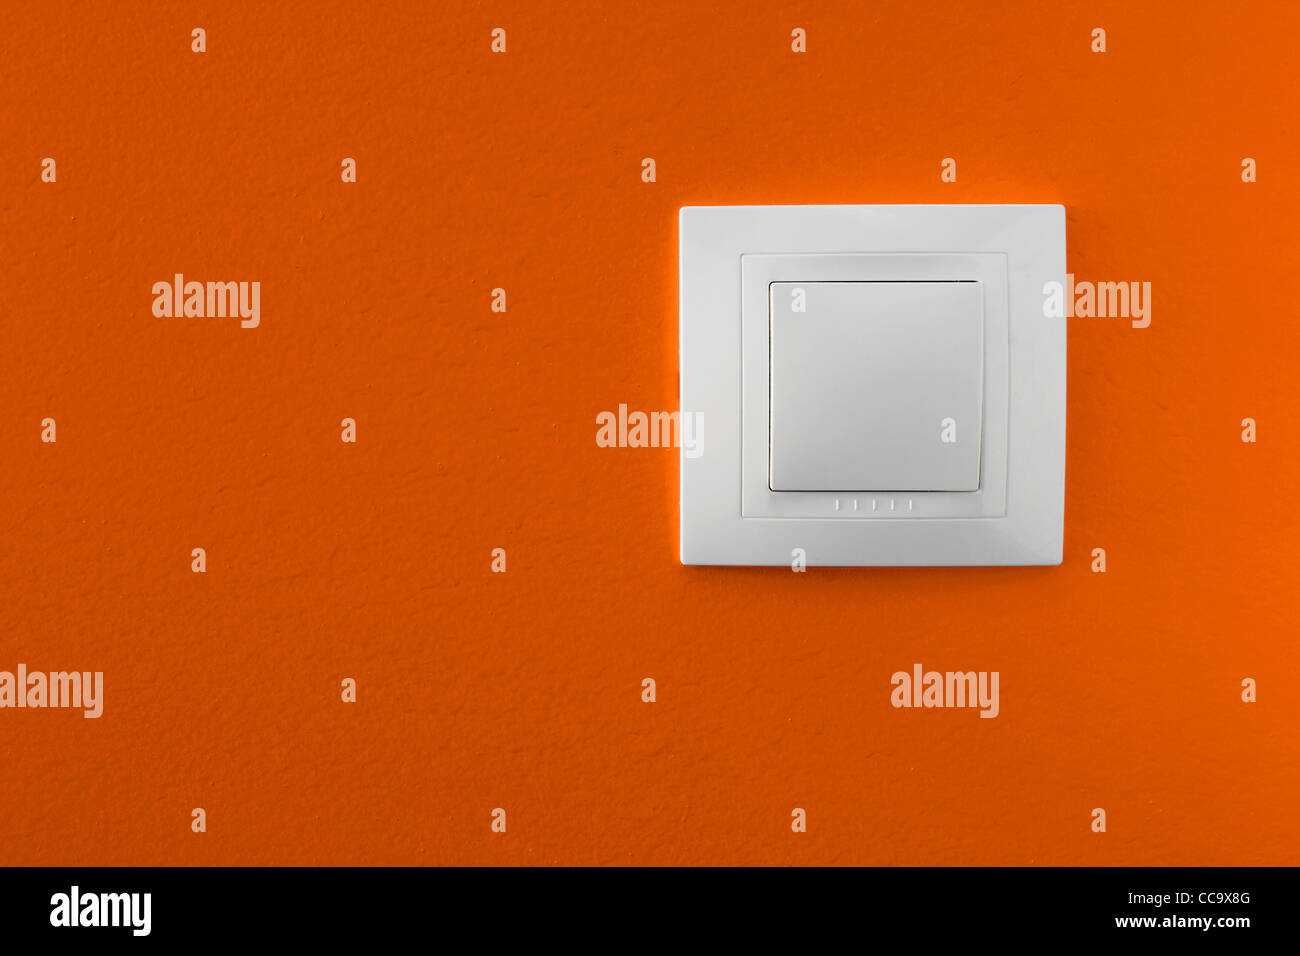 Interruptor de luz simple sobre una pared naranja Foto de stock